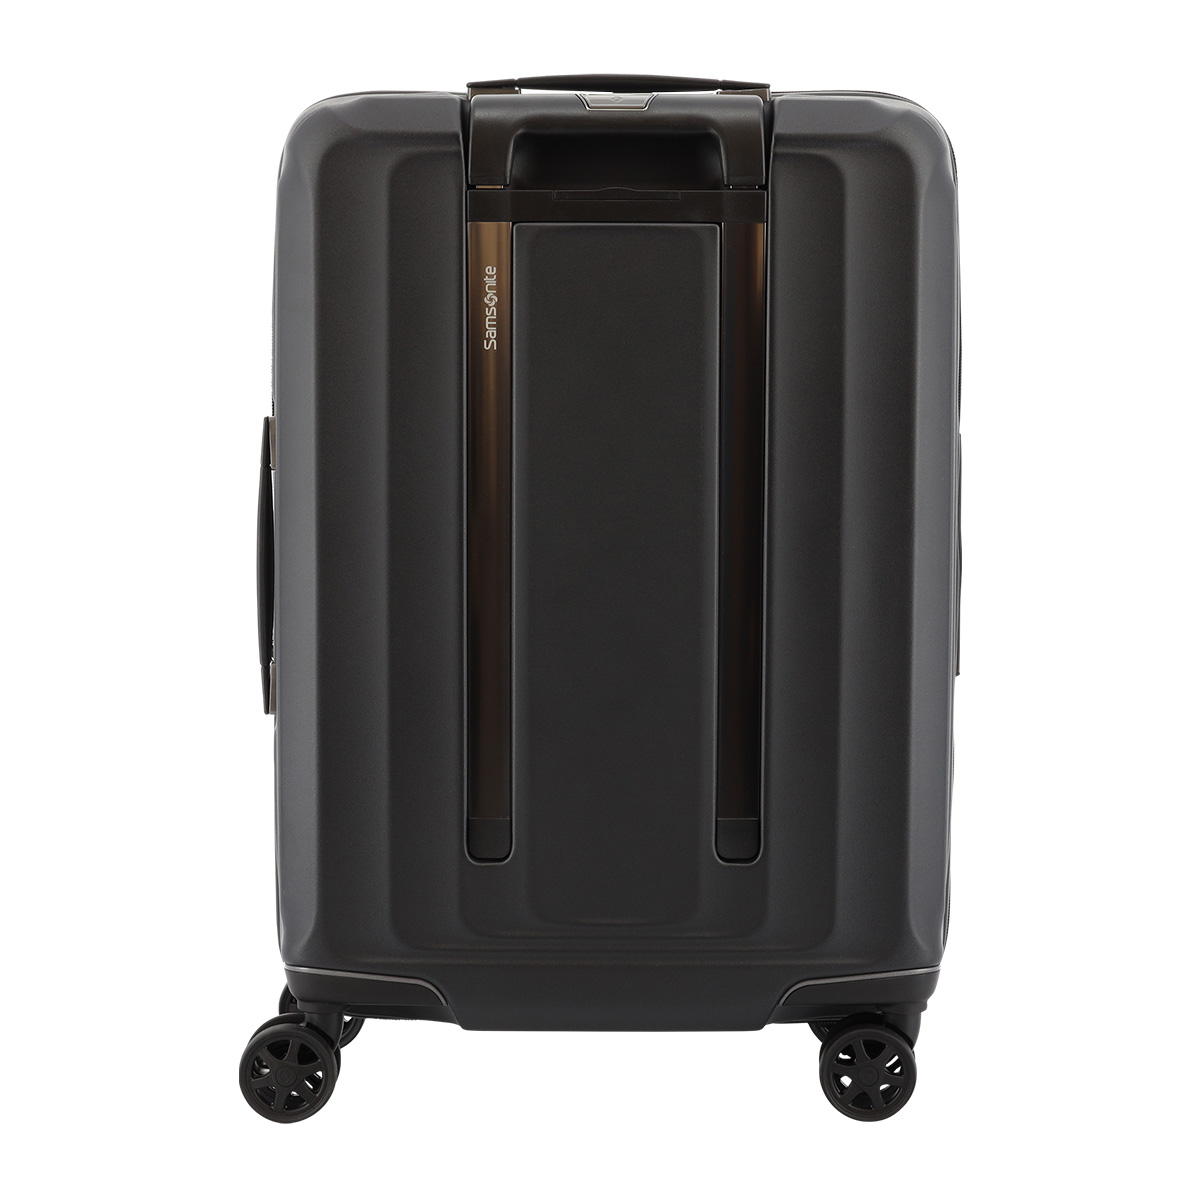 サムソナイト スーツケース ヌオン スピナー 38(42)L 51cm 2.5kg NUON-08002 38002 Samsonite  SPINNER | キャリーケース ハード ファスナー TSAロック 拡張